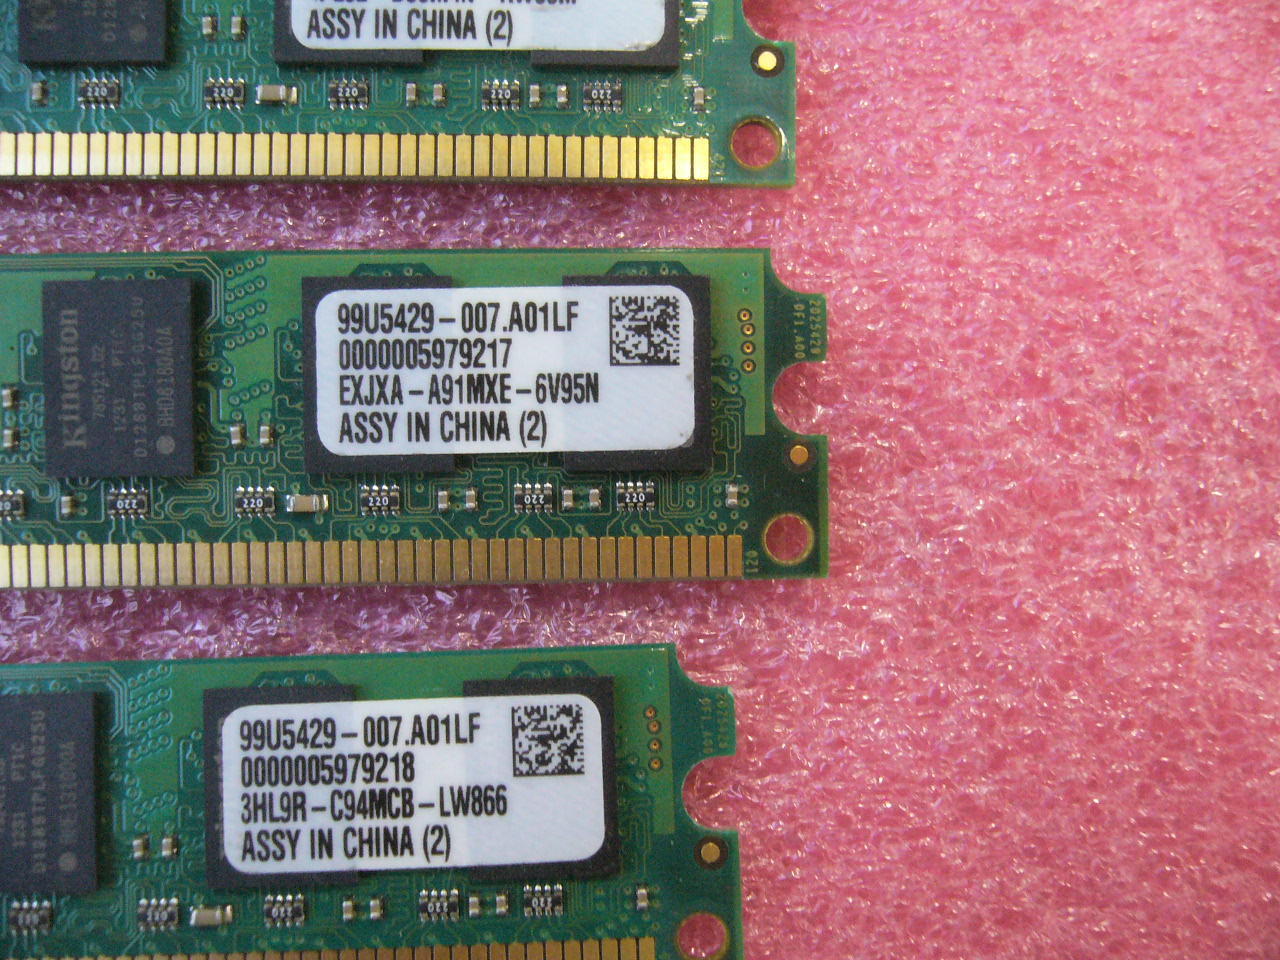 QTY 1x Dell 2GB DDR2 800Mhz non-ECC desktop mem SNPYG410C/2G 99U5429-007.A01LF - Click Image to Close